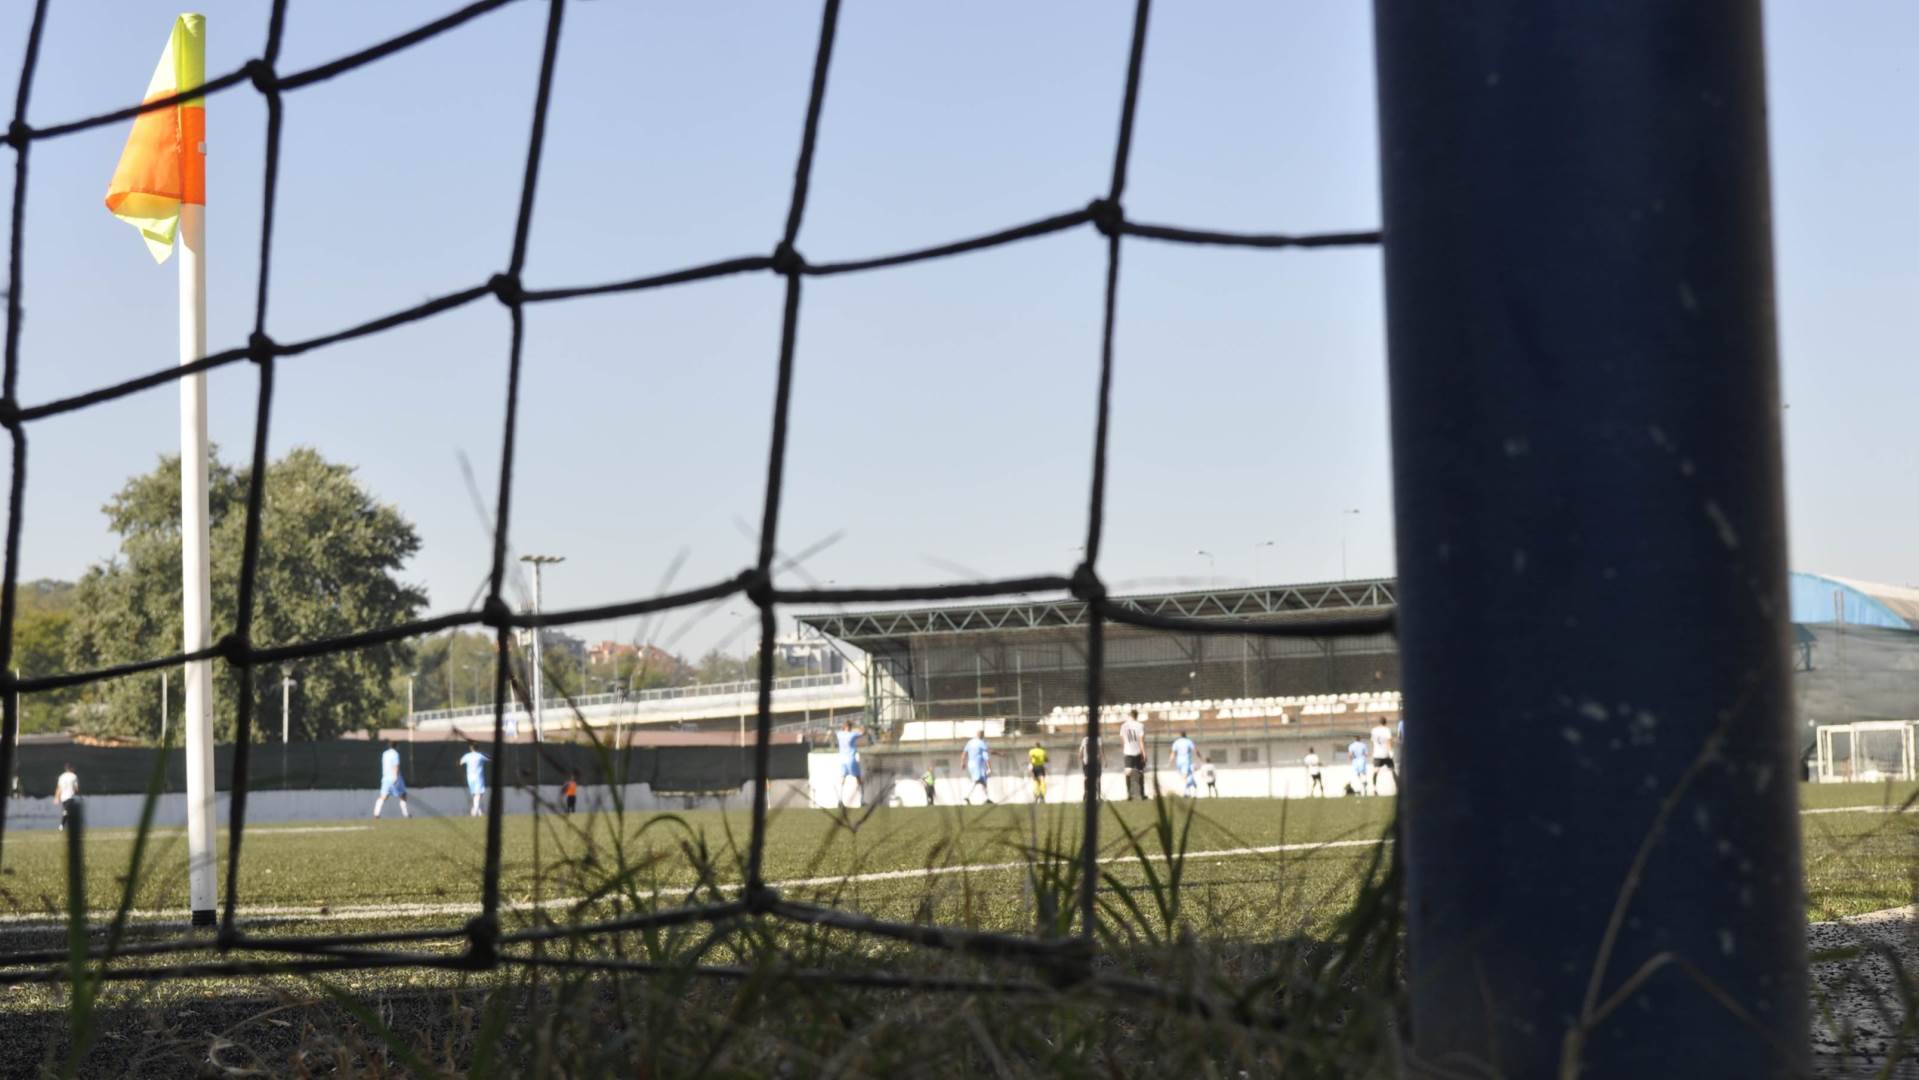  Sve u 16 Mondo podkast o FK Dunav Veliko Selo, gosti trener Ćebić i fudbaler Nicović VIDEO 